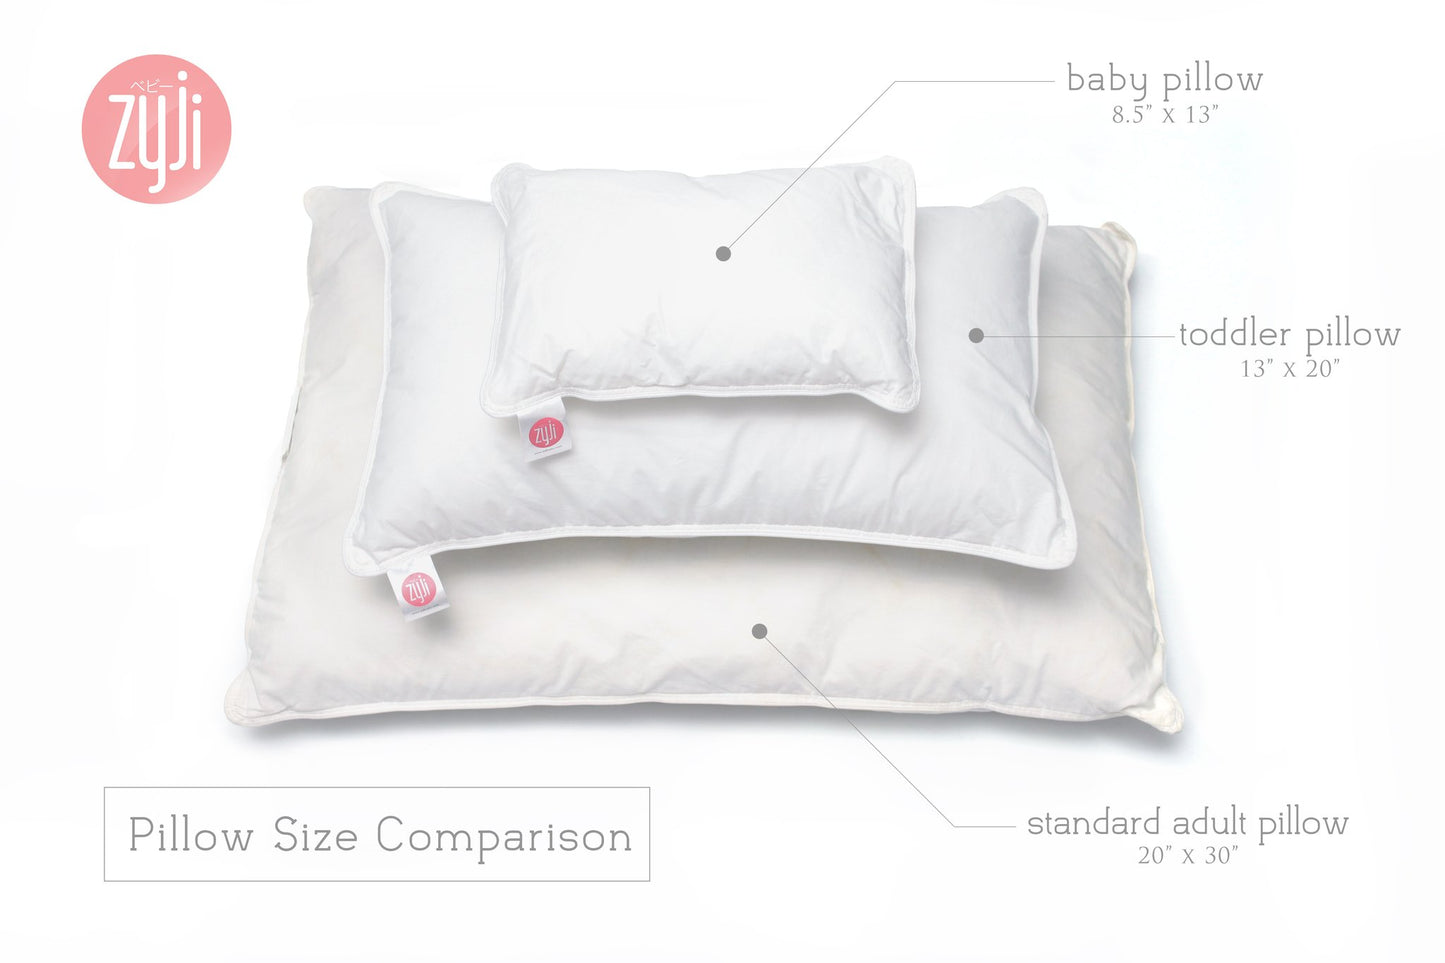 Toddler Pillow (13"x20")